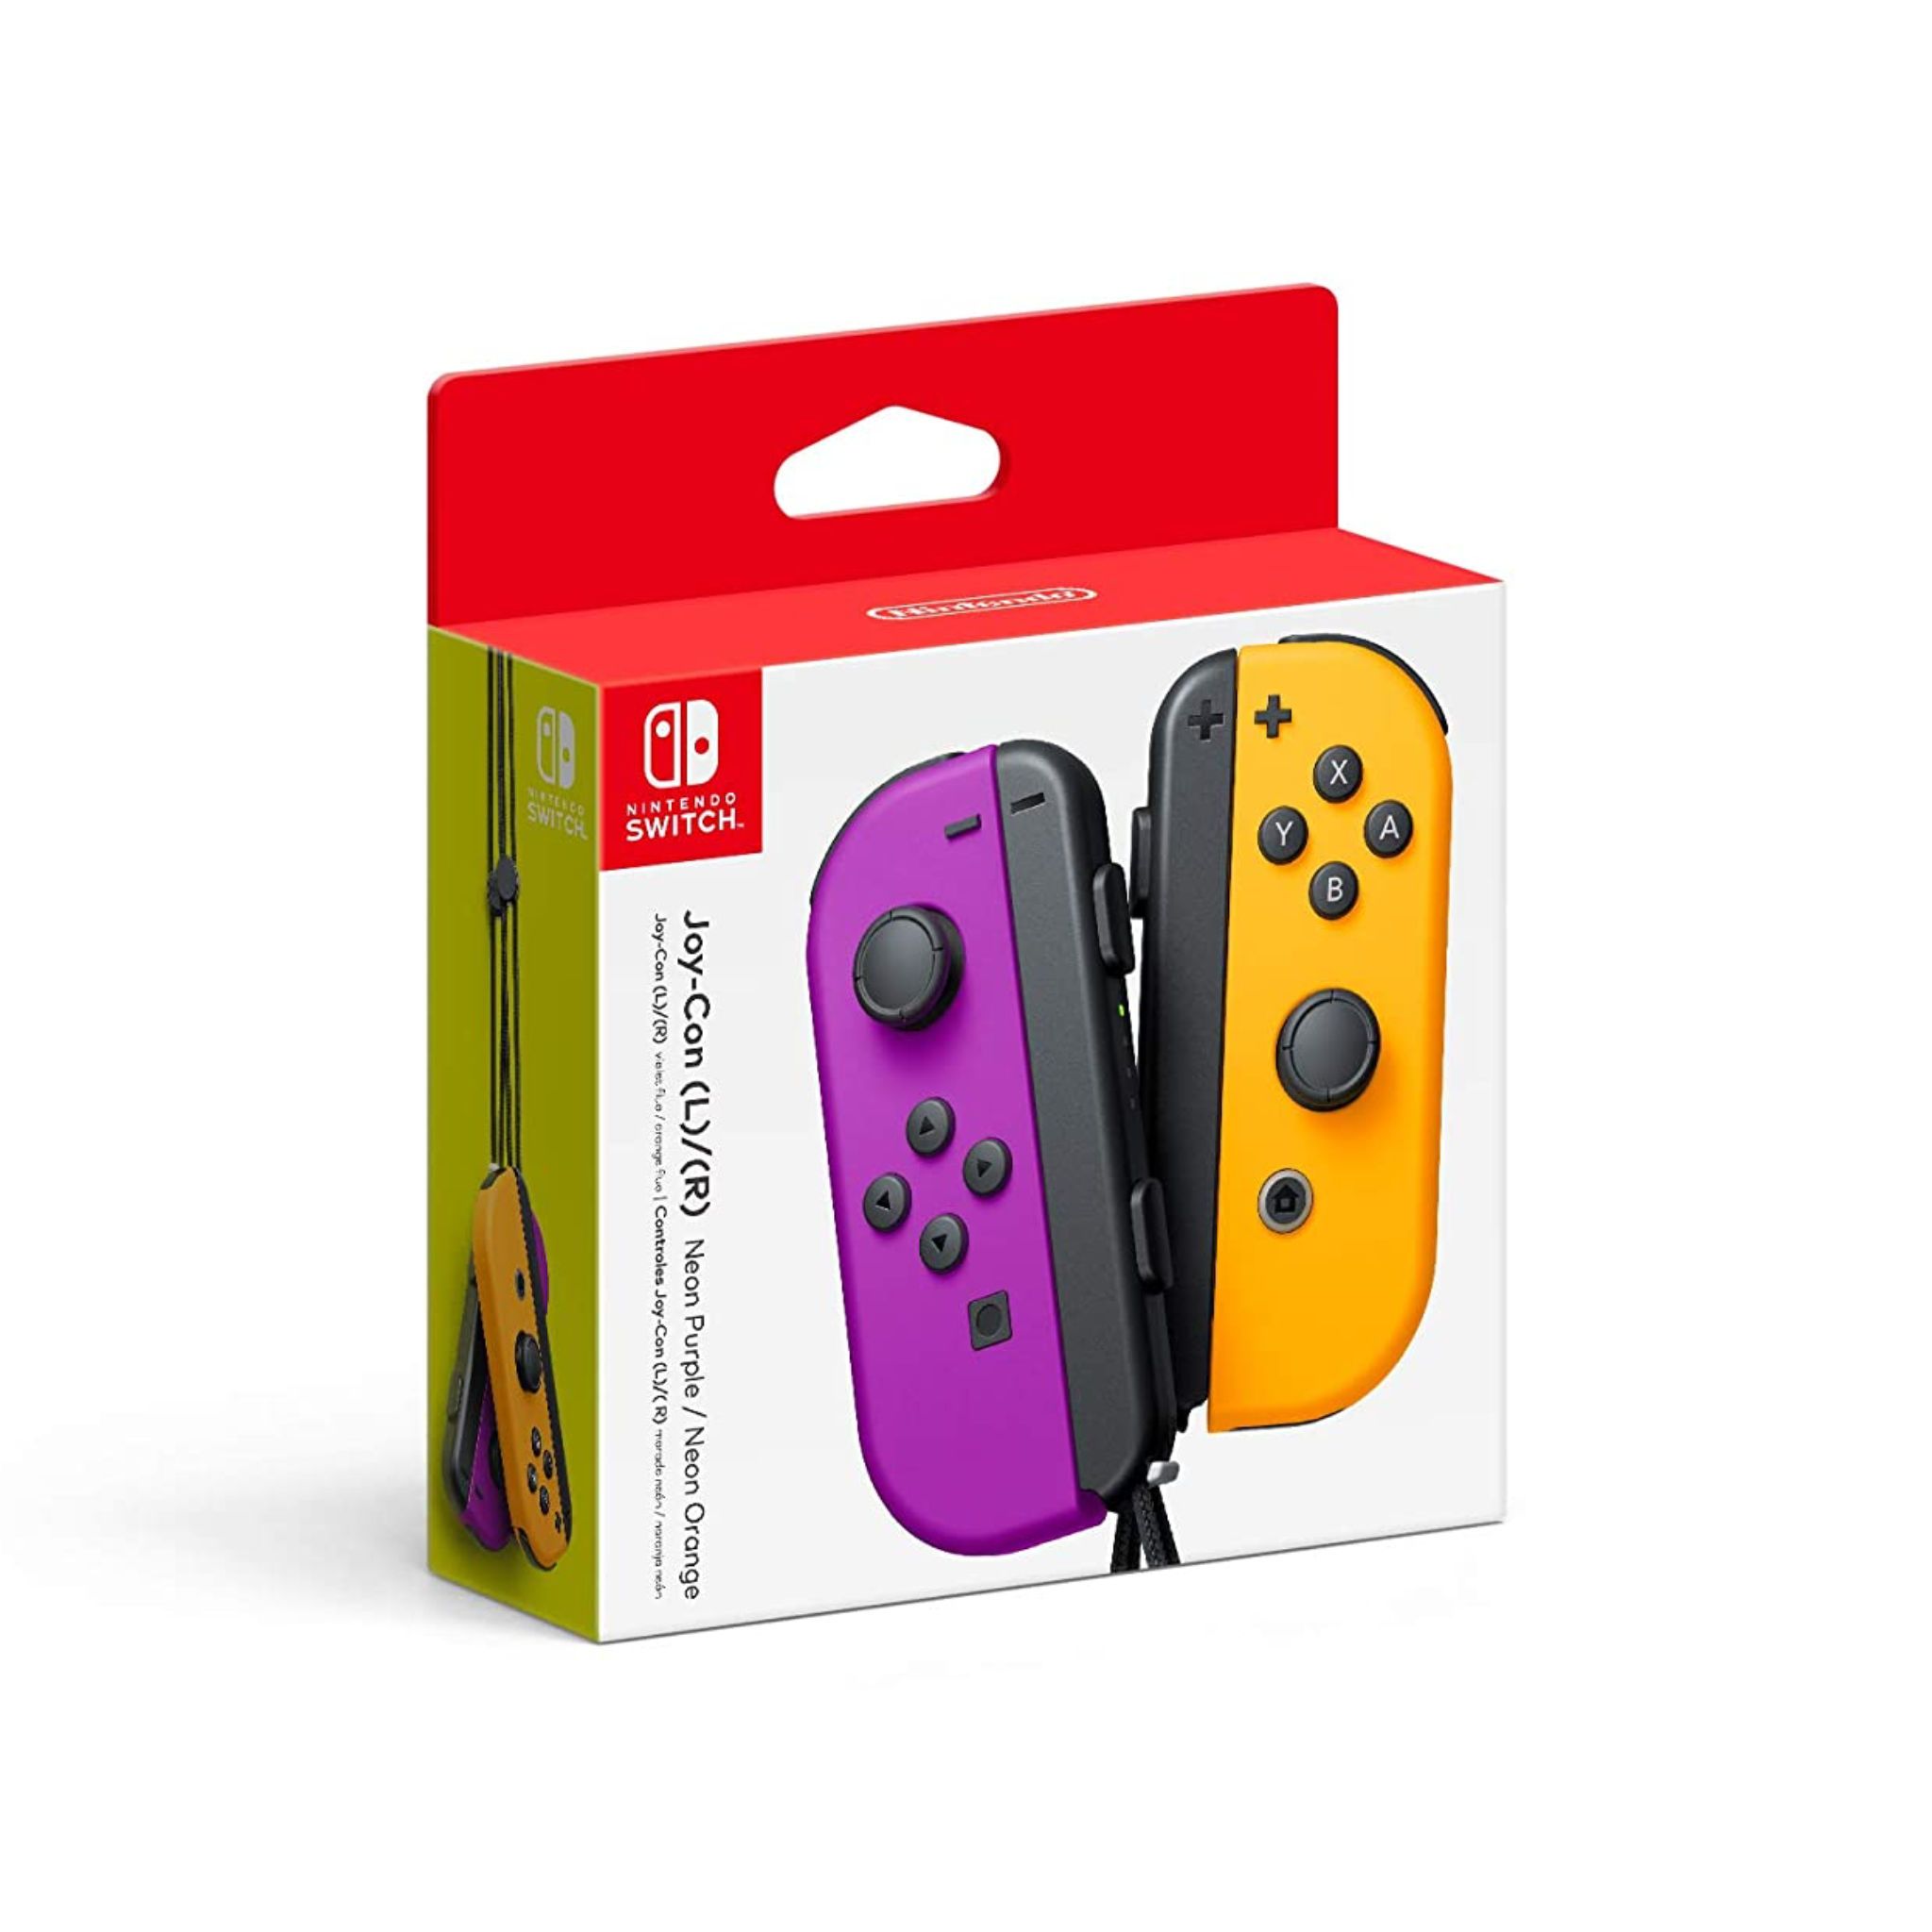  Tay Cầm Nintendo Joy-Con (L/R) - Neon Purple/Neon Orange 